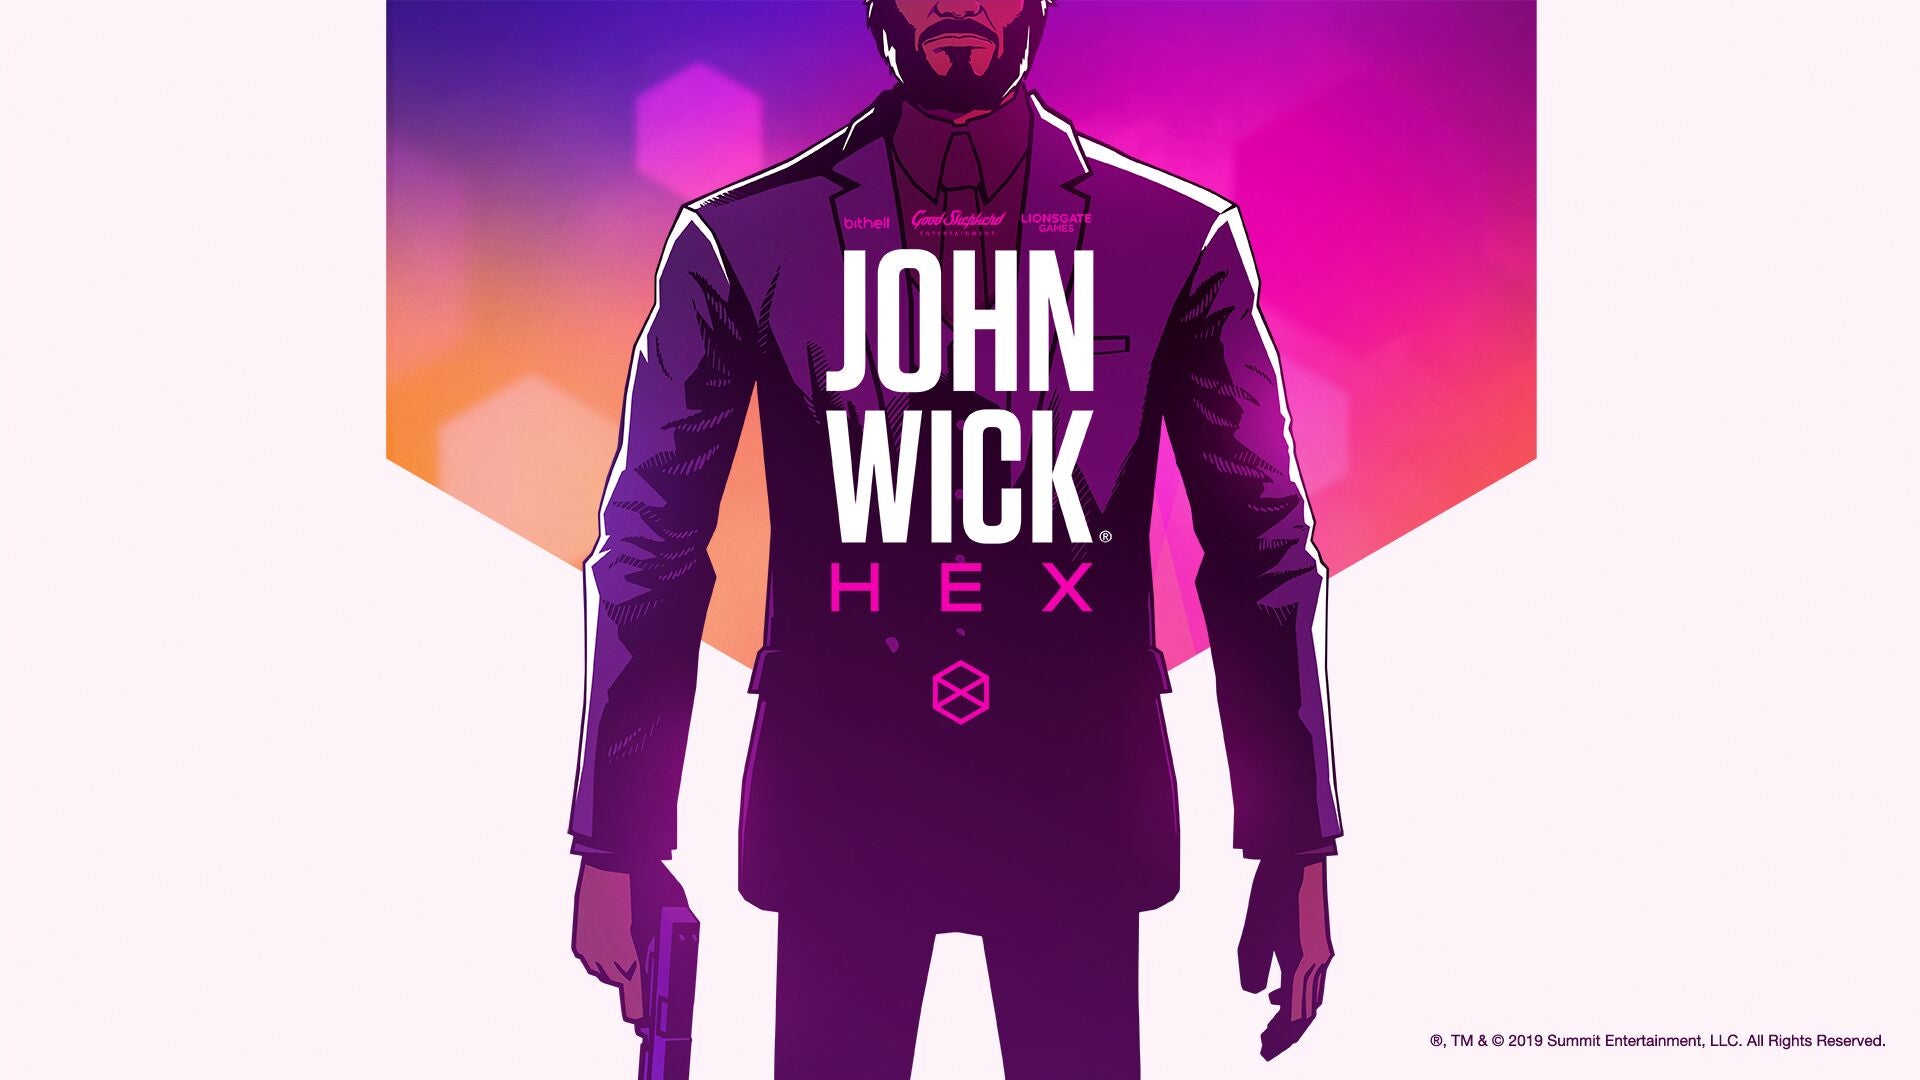 Immagine di Mike Bithell presenta John Wick Hex, un action dalle atmosfere noir che si basa sui film con Keanu Reeves